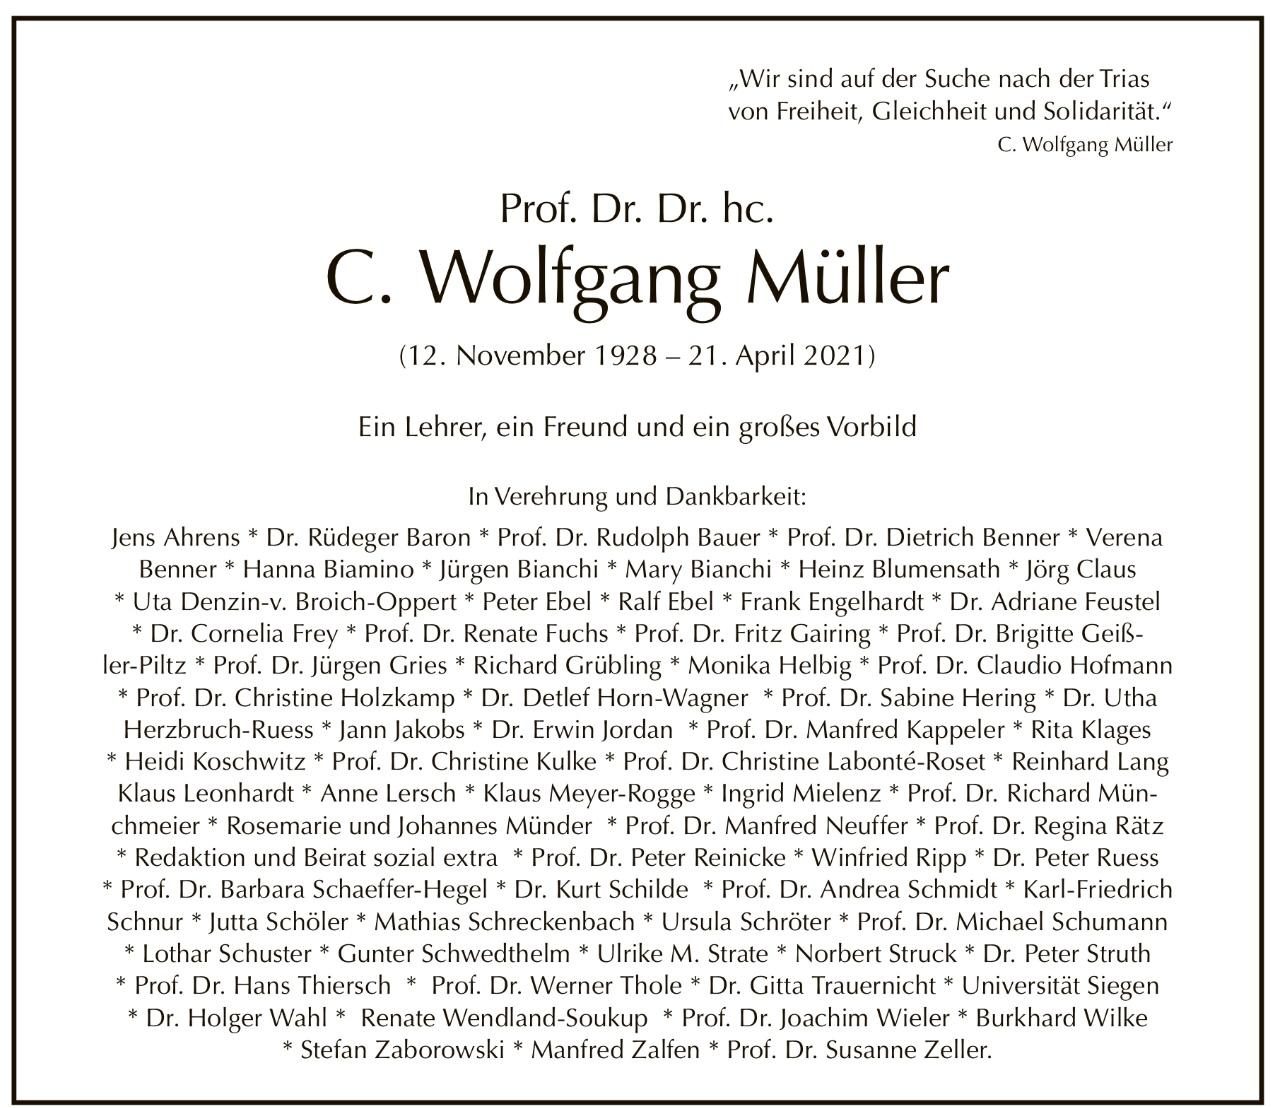 Anzeige des Freundeskreis von C.W. Müller im Tagesspiegel vom 2.5.2021